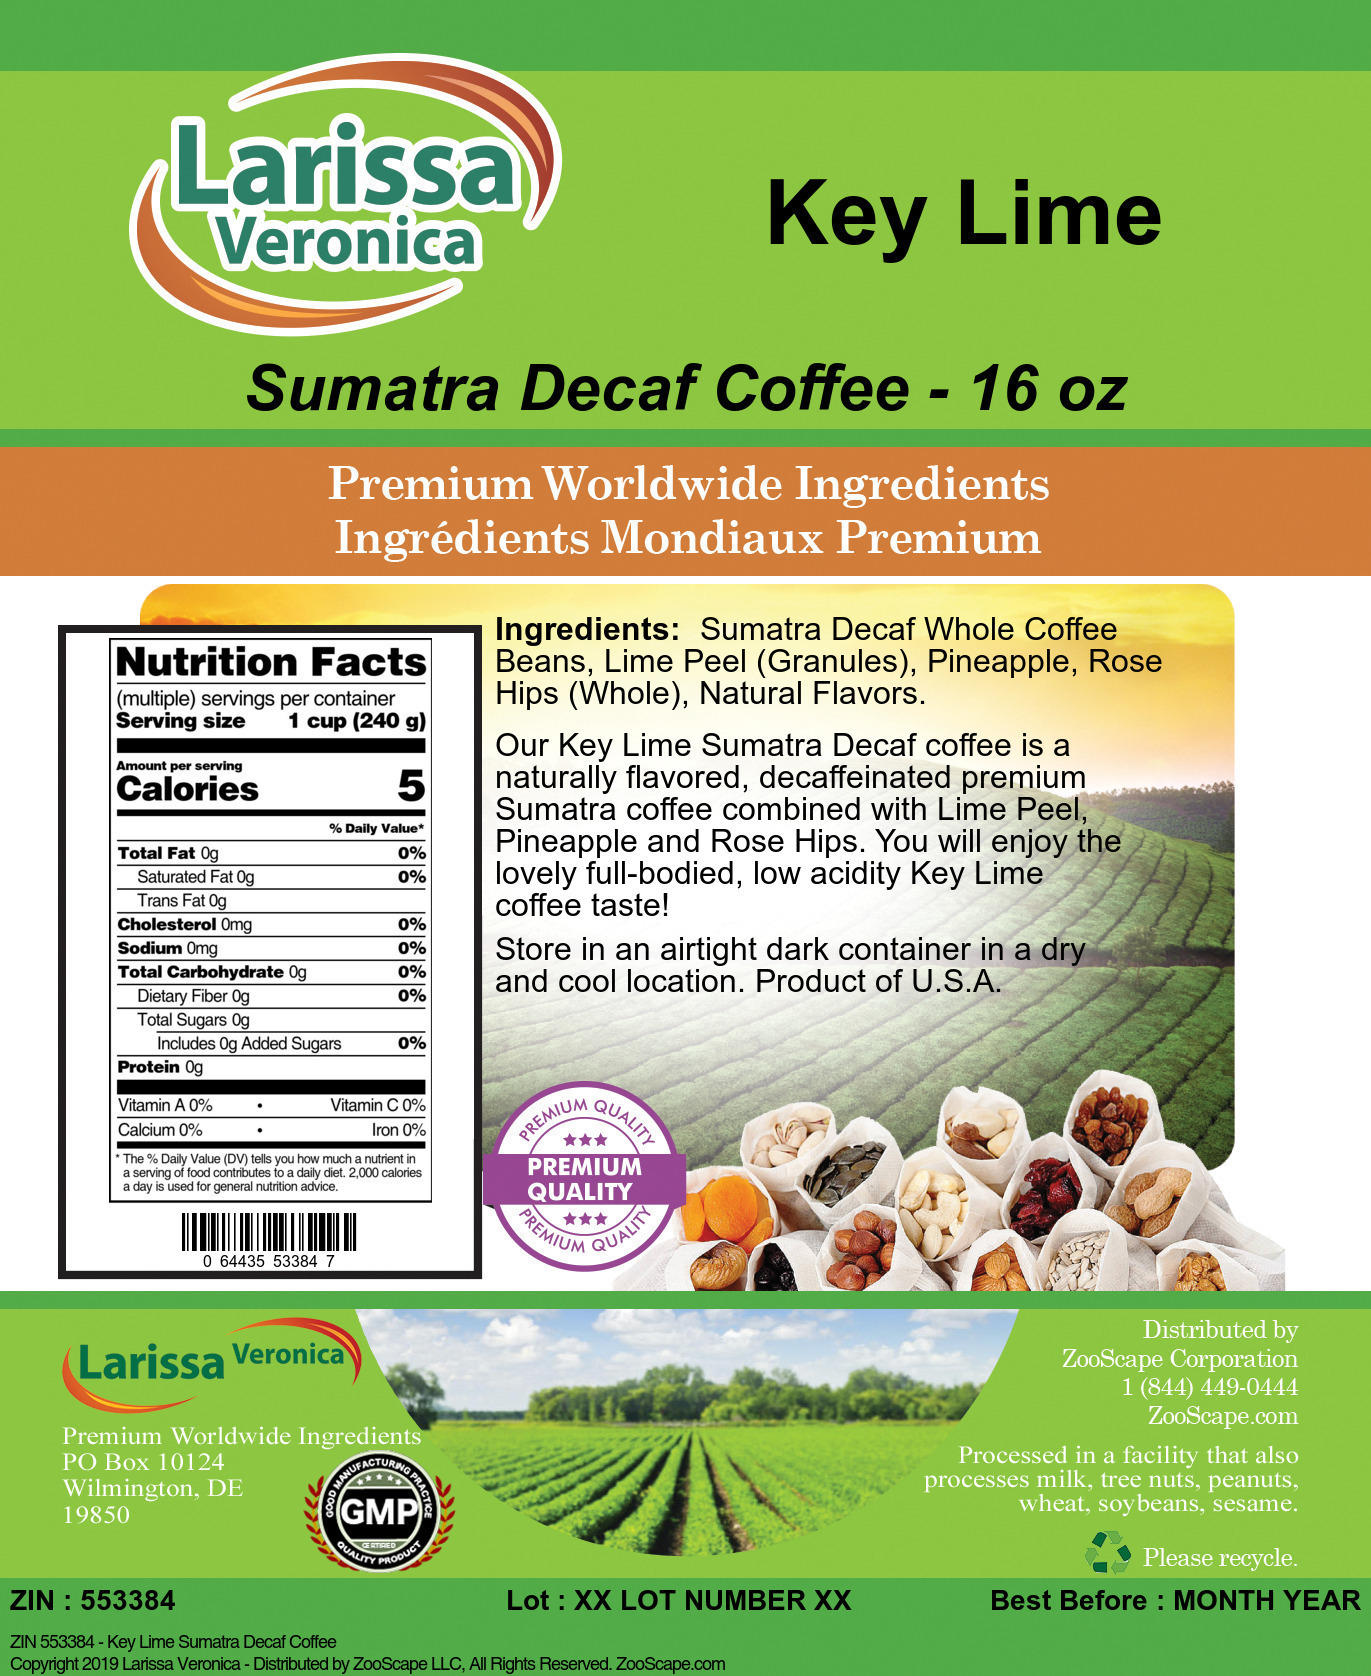 Key Lime Sumatra Decaf Coffee - Label